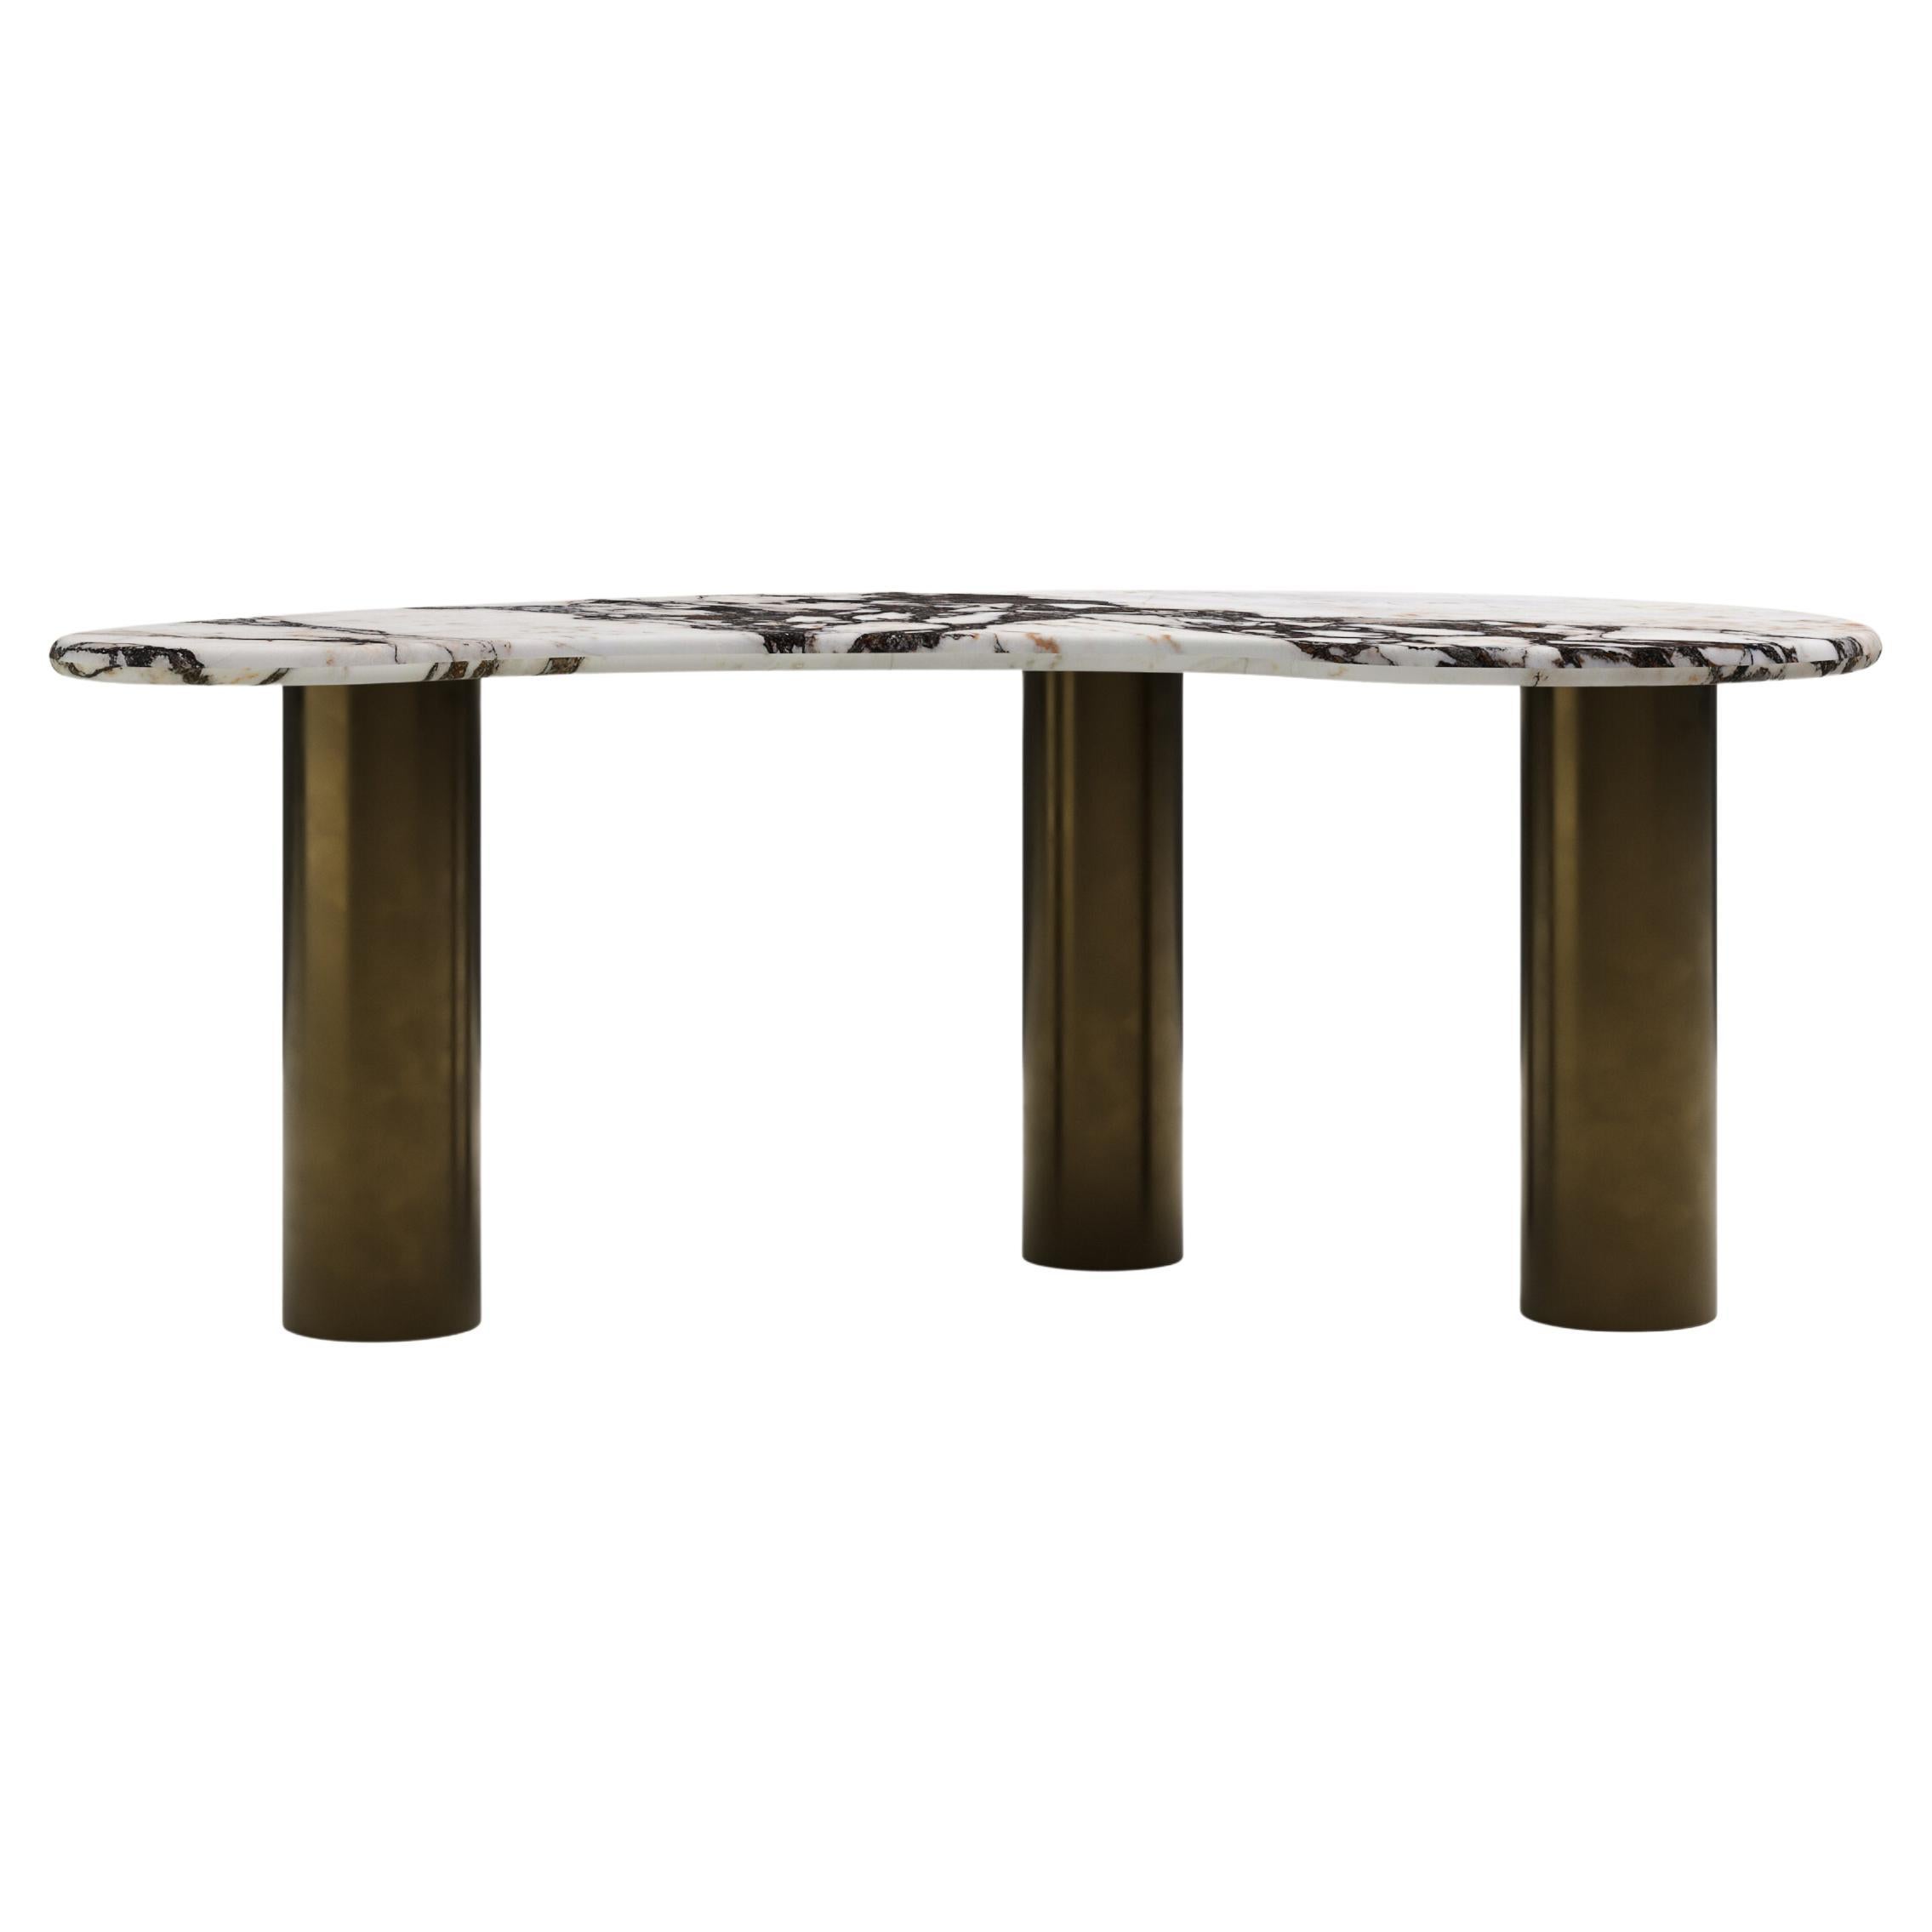 FORM(LA) Lago Freeform Desk 72”L x 36”W x 28”H Viola Marble & Antique Bronze For Sale